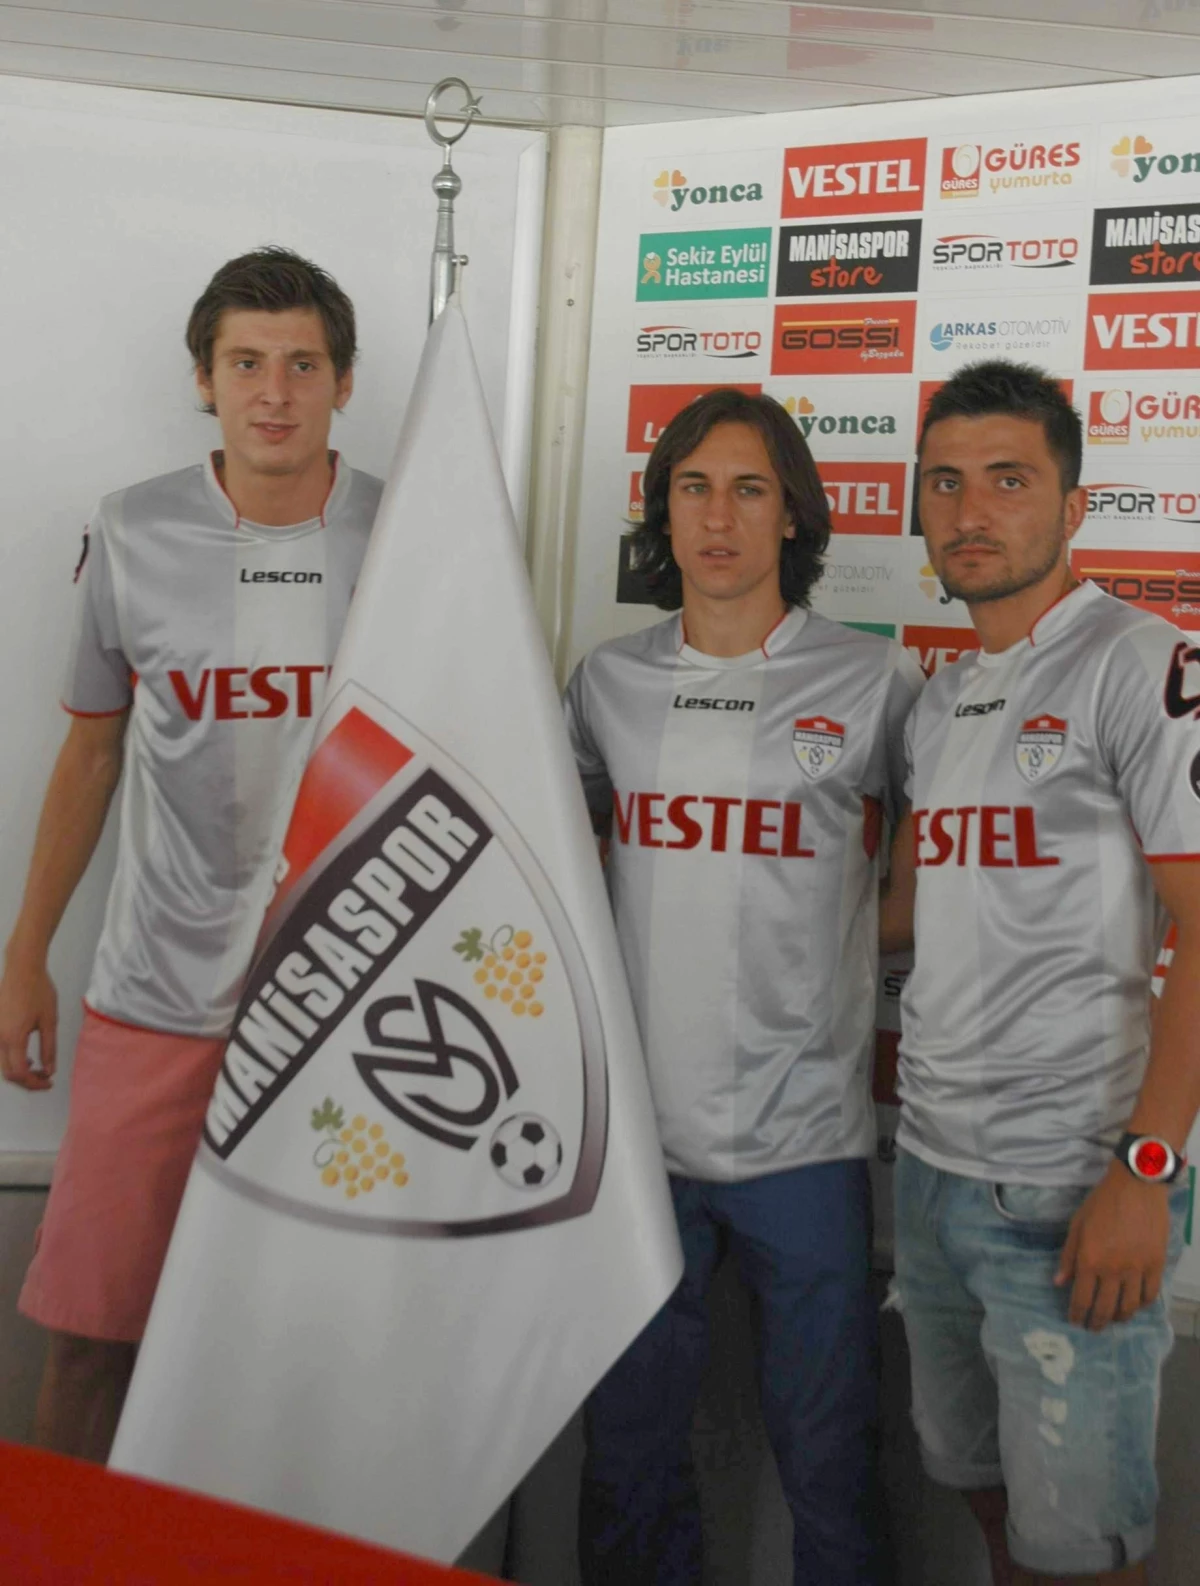 Manisaspor İç Transferde 3 Futbolcusu ile Sözleşmesini Uzattı